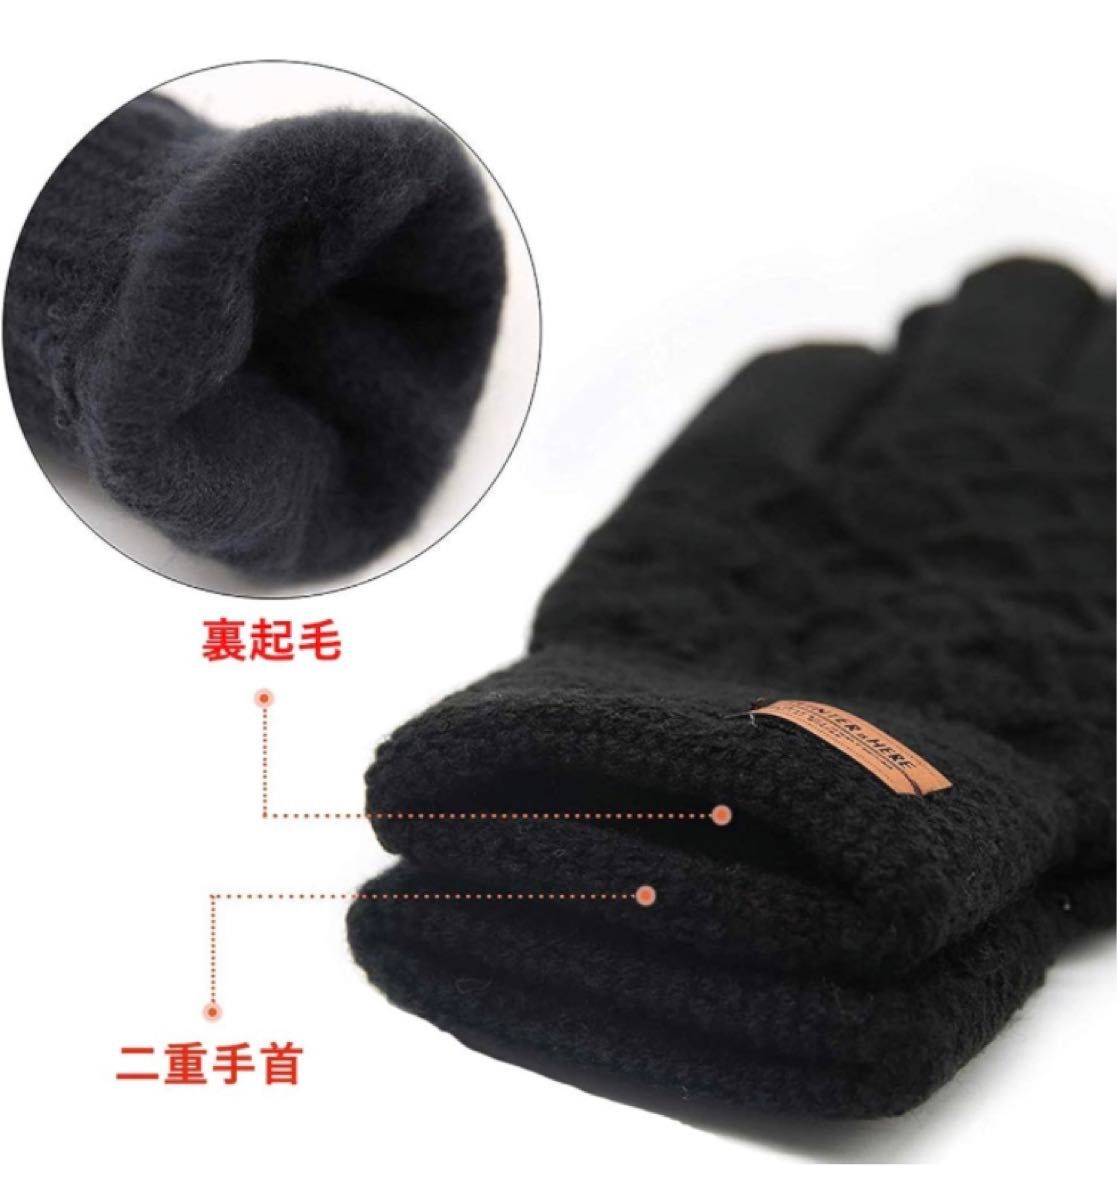 手袋 グローブ ニット スマホ対応 防寒グローブ 弾性手首・タッチパネル対応 グローブ 保温性良い